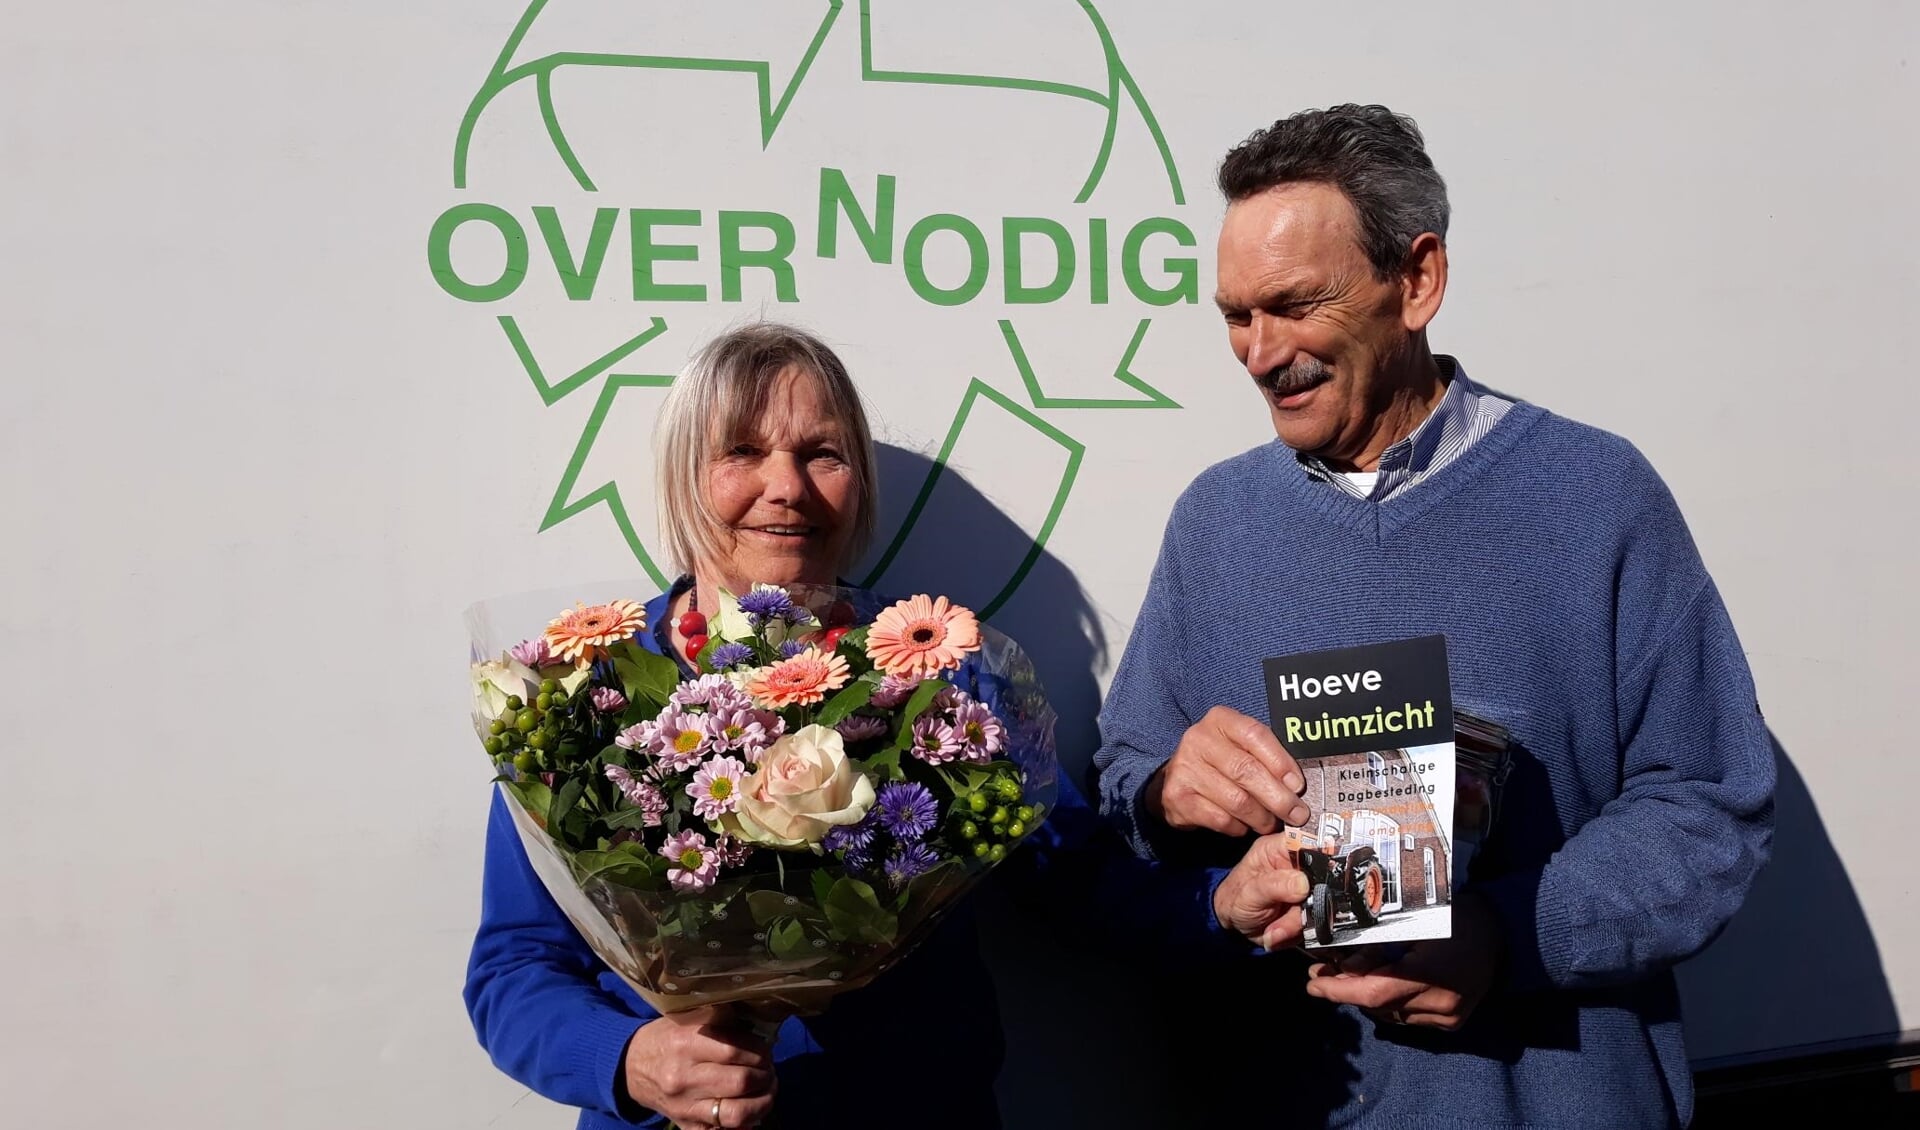 Foto van overhandiging bos bloemen door gast Hoeve Ruimzicht aan medewerker van Overnodig.